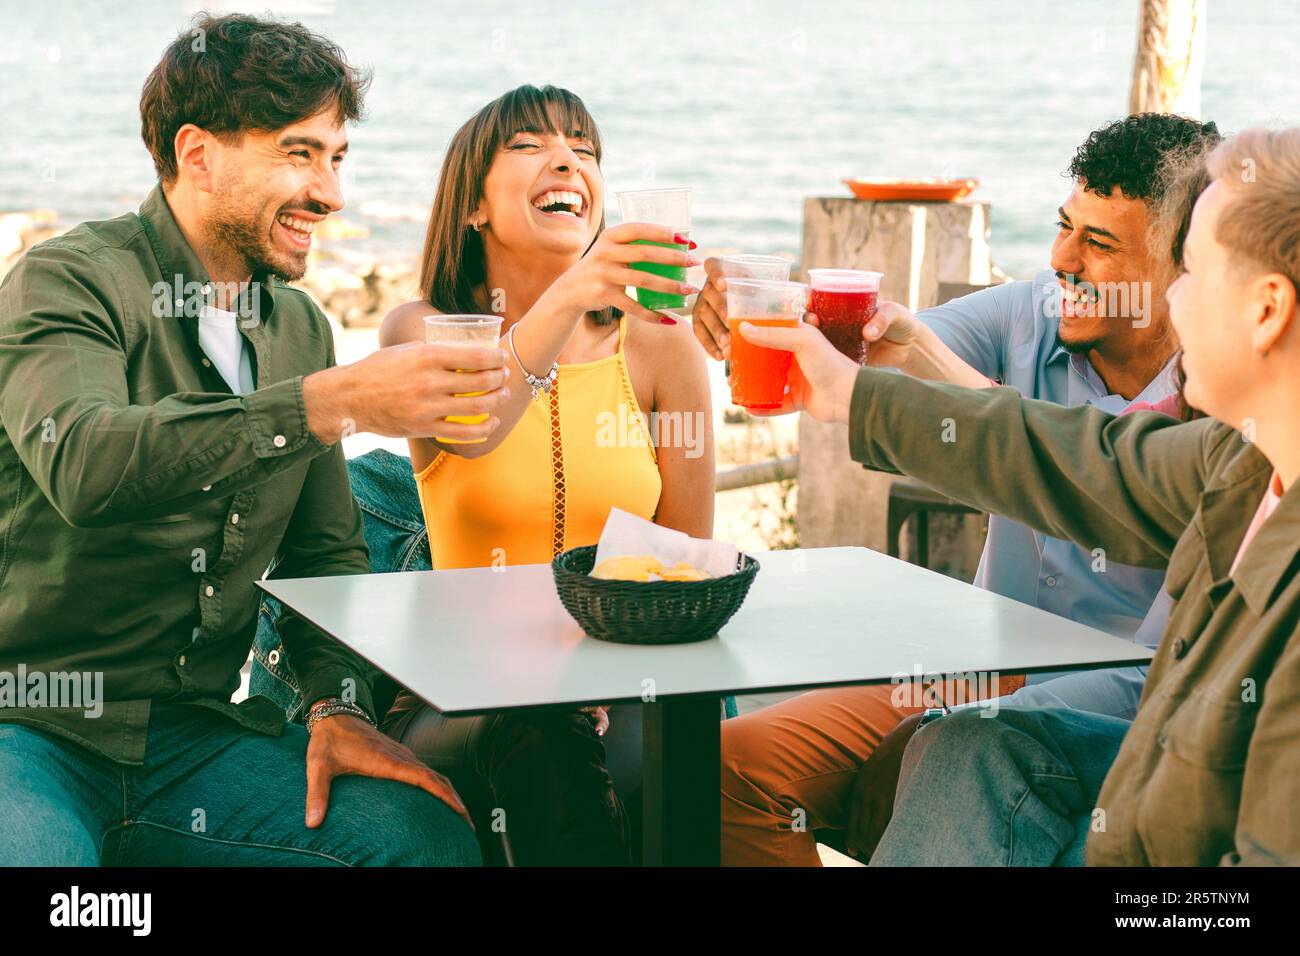 Un gruppo diversificato di amici seduti in un bar sulla spiaggia, brinda allegramente con vibranti cocktail in tazze di plastica. La vivace scena mostra la gioia Foto Stock